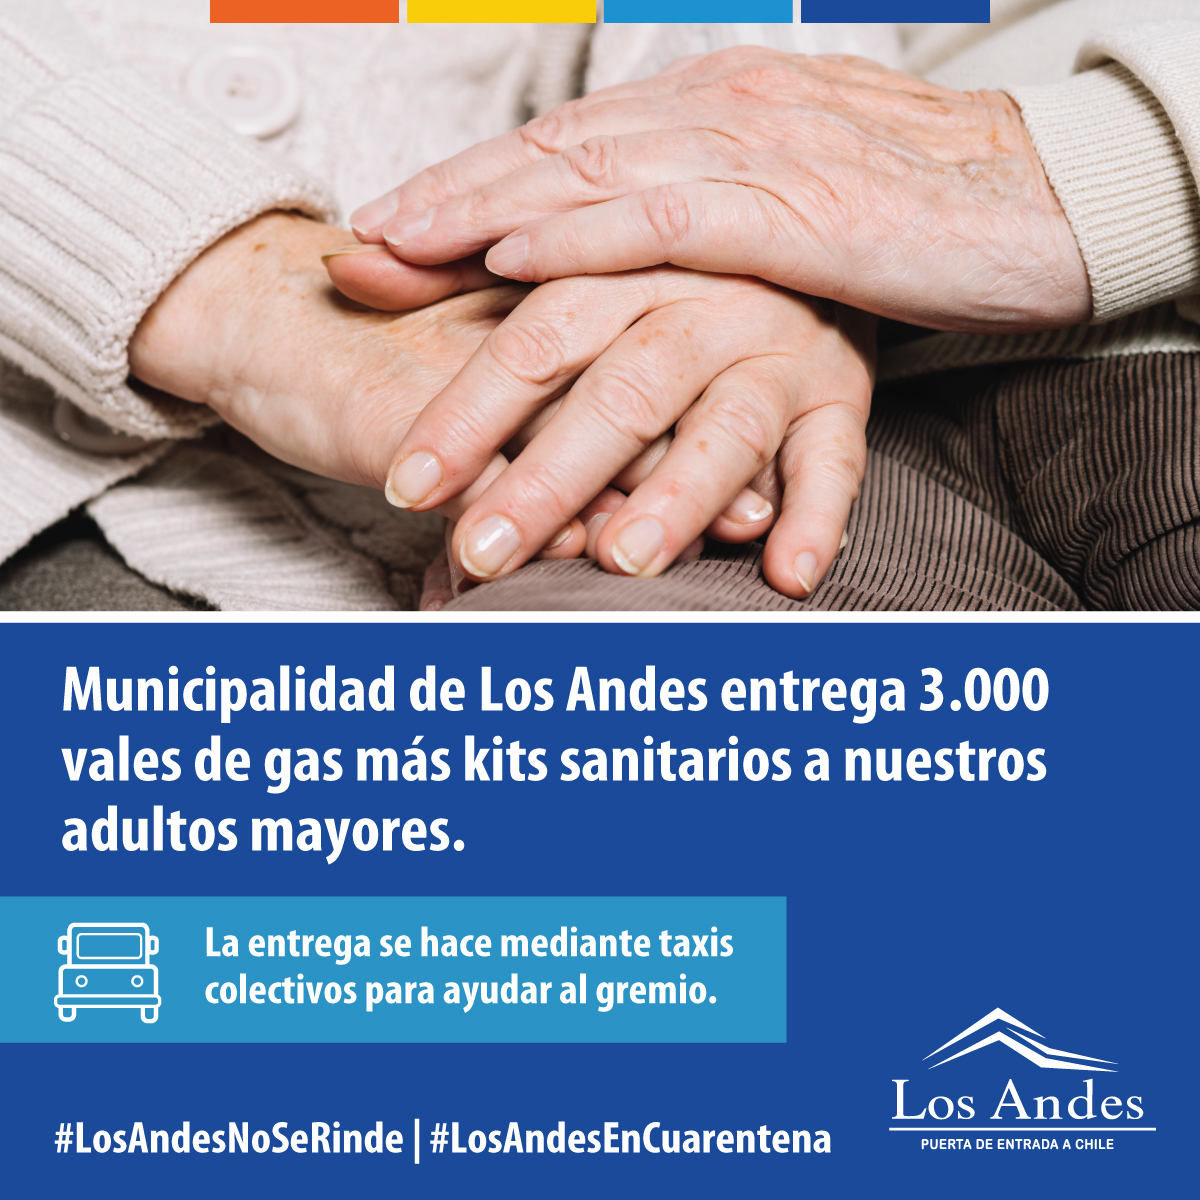 LOS ANDES: Se entregará ayuda focalizada para adultos mayores de la comuna de Los Andes